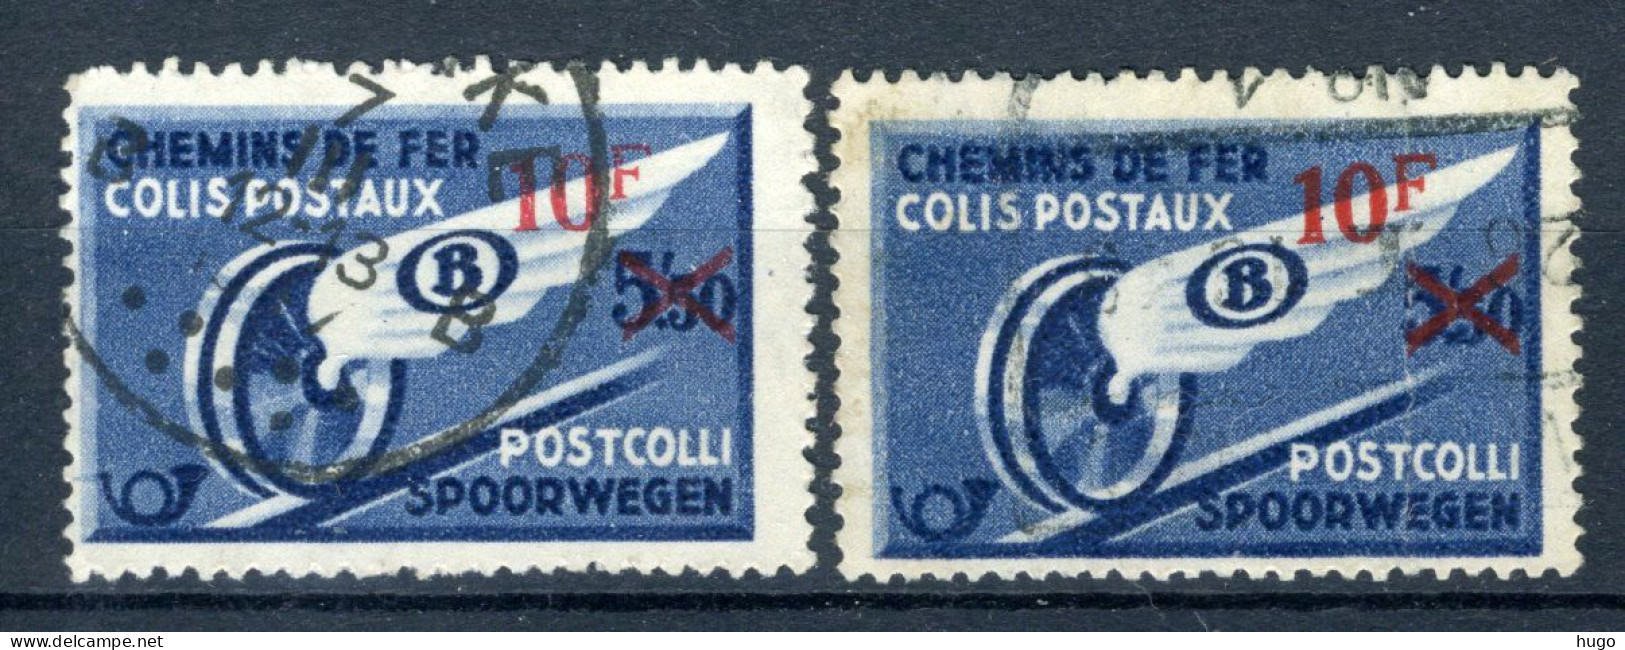 (B) TR292 Gestempeld 1946 - Gevleugeld Wiel Met Rode Opdruk (2 Stuks) - 4 - Afgestempeld